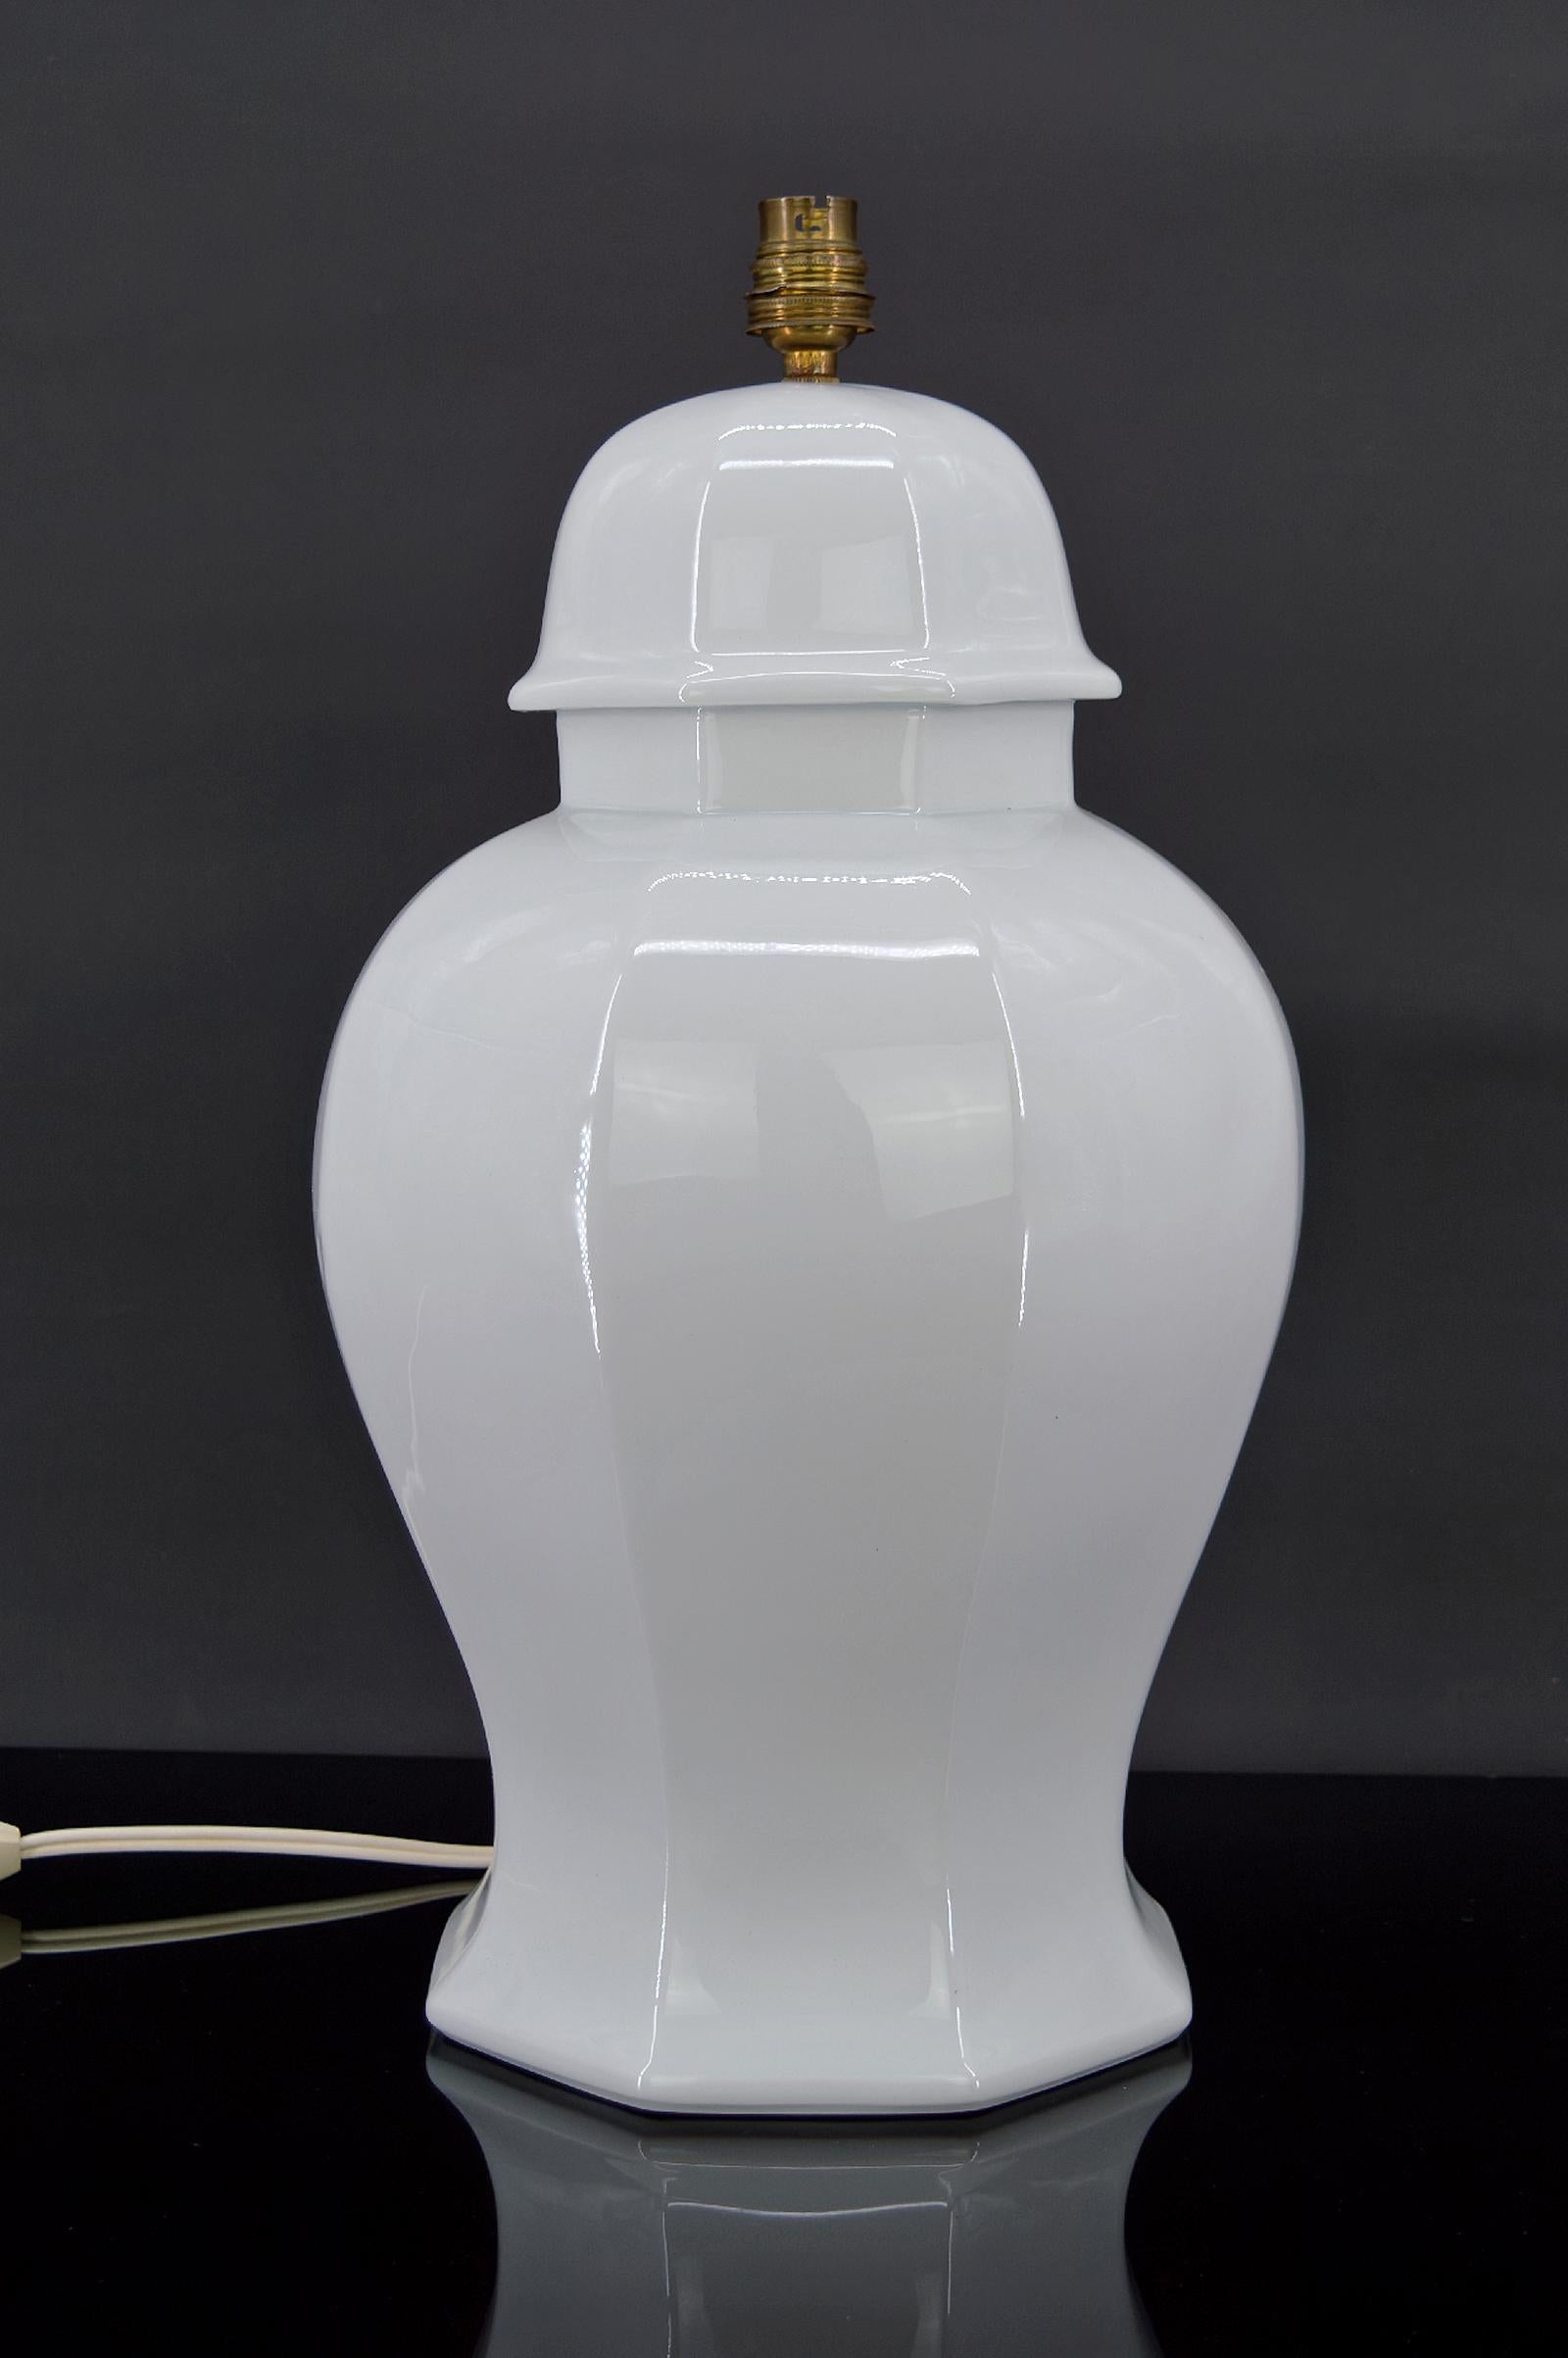 Belle lampe de salon en porcelaine blanche.

Inspiration extrême-orientale / japonisme, France, vers 1970-1980.

Estampillé 